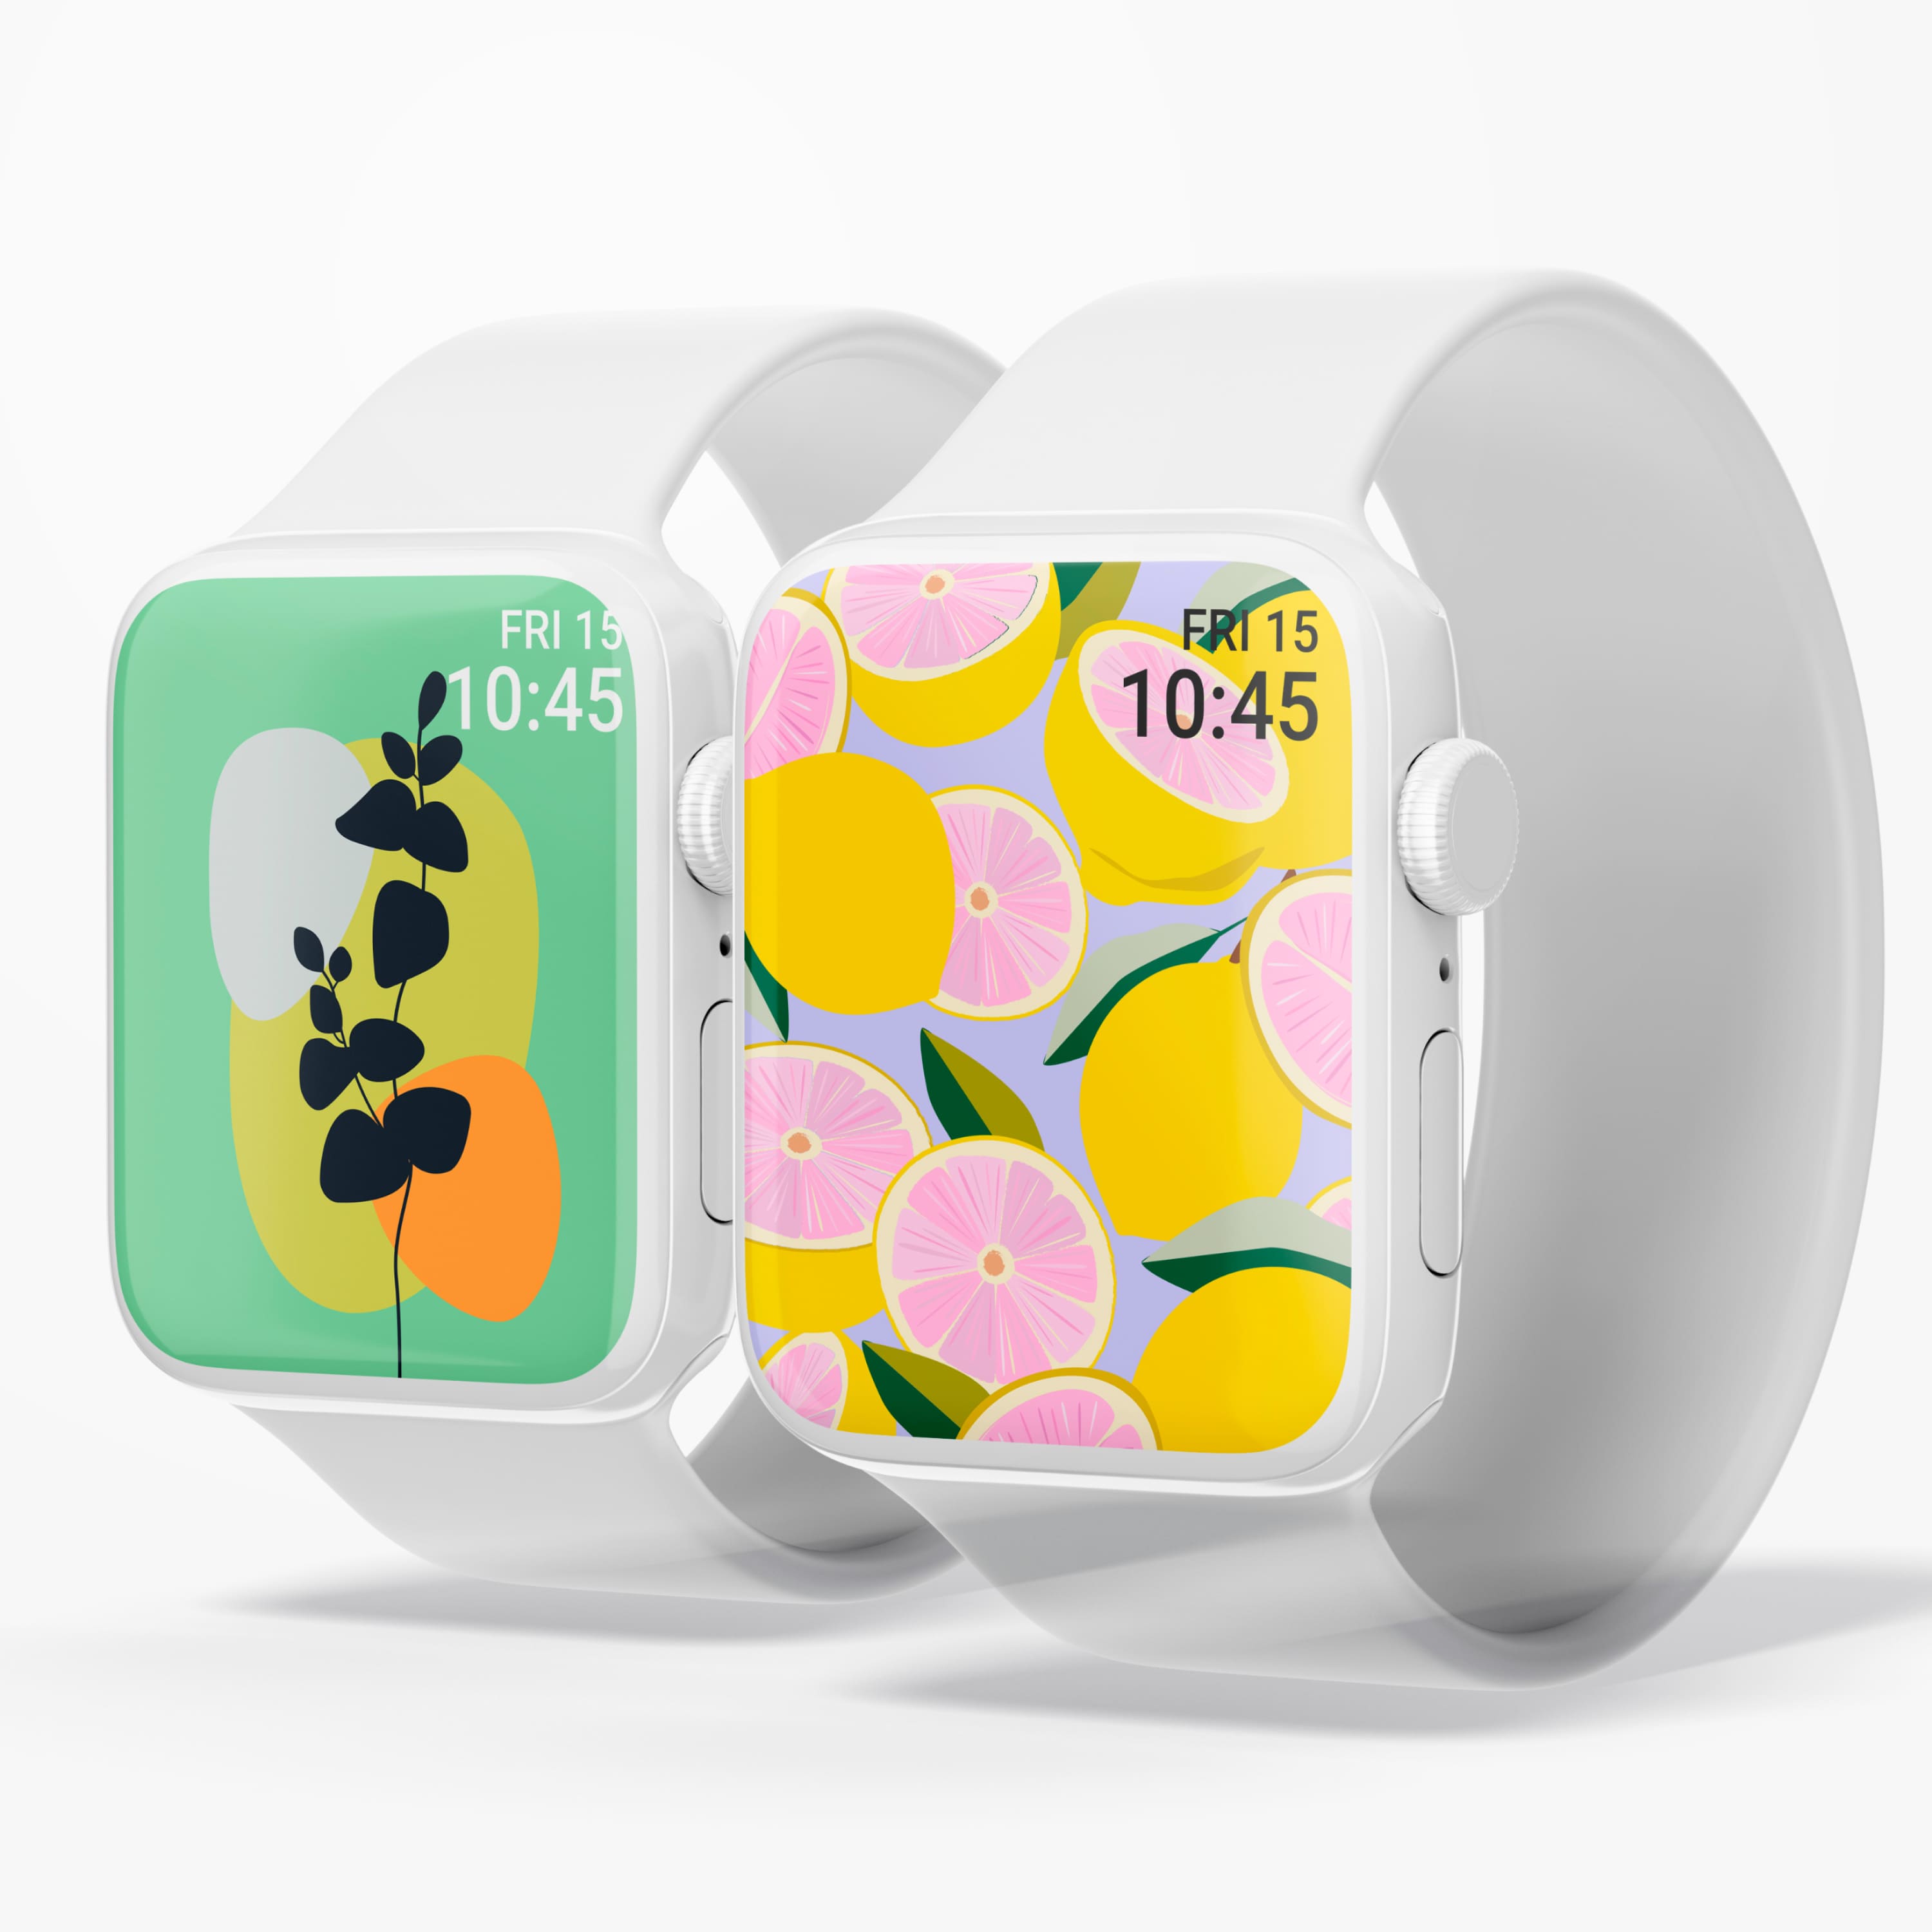 Apple Logo, smartwatch HD wallpaper | Pxfuel